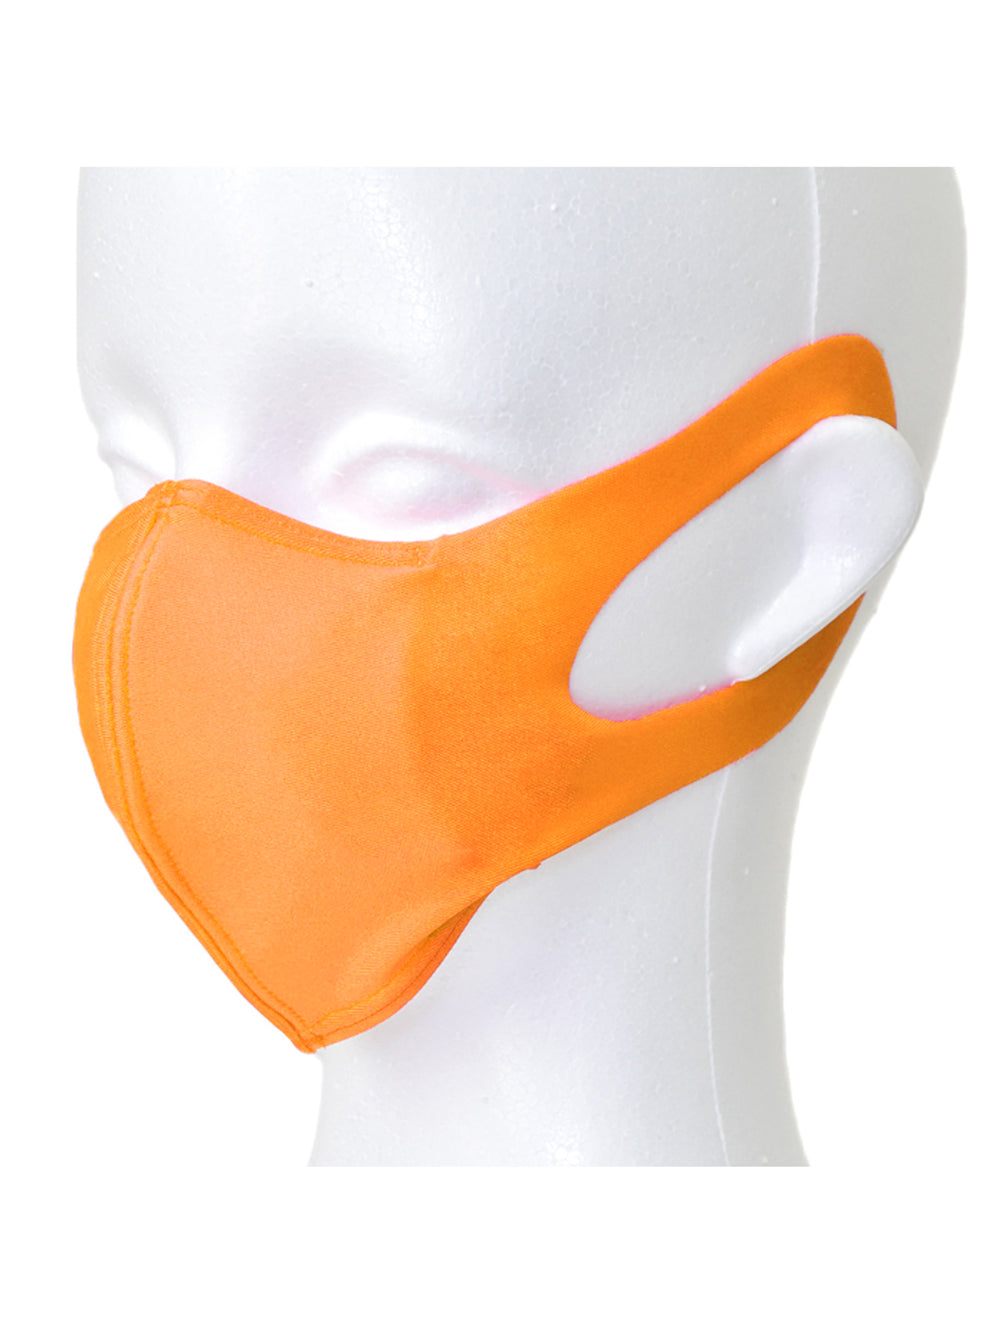 [マスクSALE][LOOPA MASK] ルーパ シルキーファイン マスク Silky Fine Sports Mask / スポーツマスク 抗菌・防臭加工 洗える 日本製 水着素材 UV [A] - Puravida!プラヴィダ ヨガウェア ヨガマット